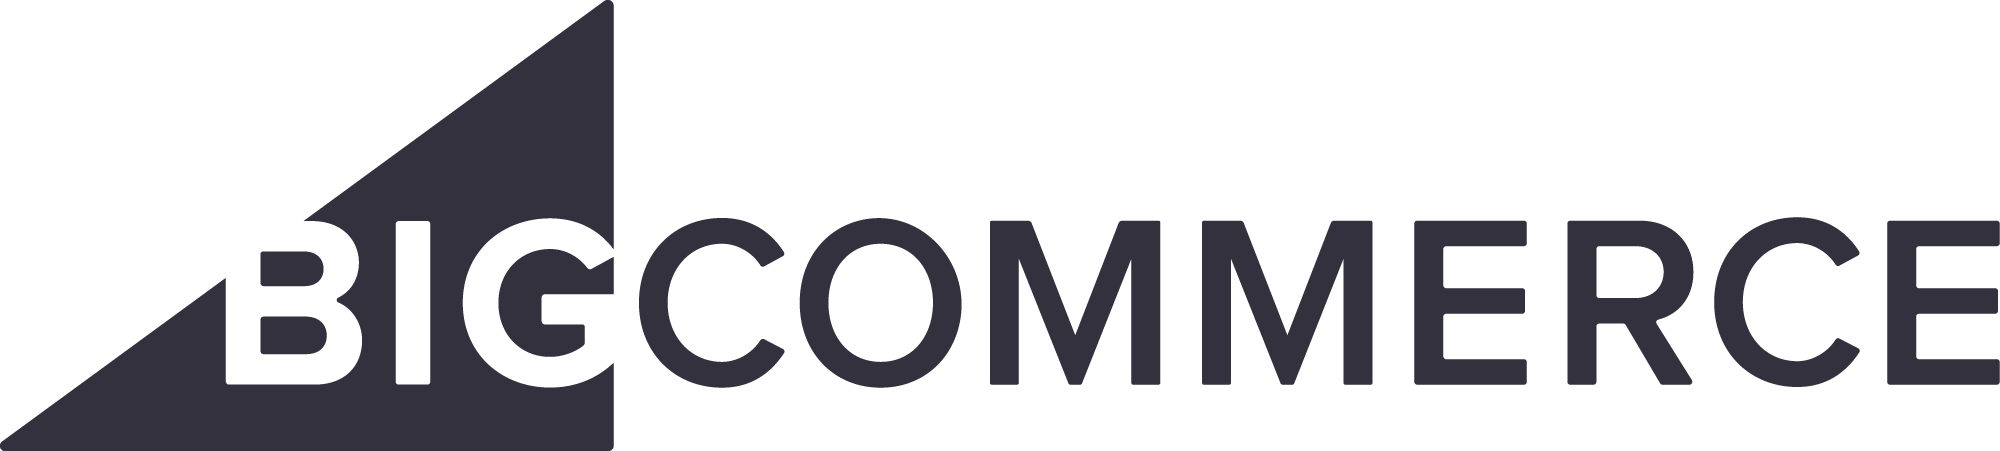 Logo-BigCommerce.png